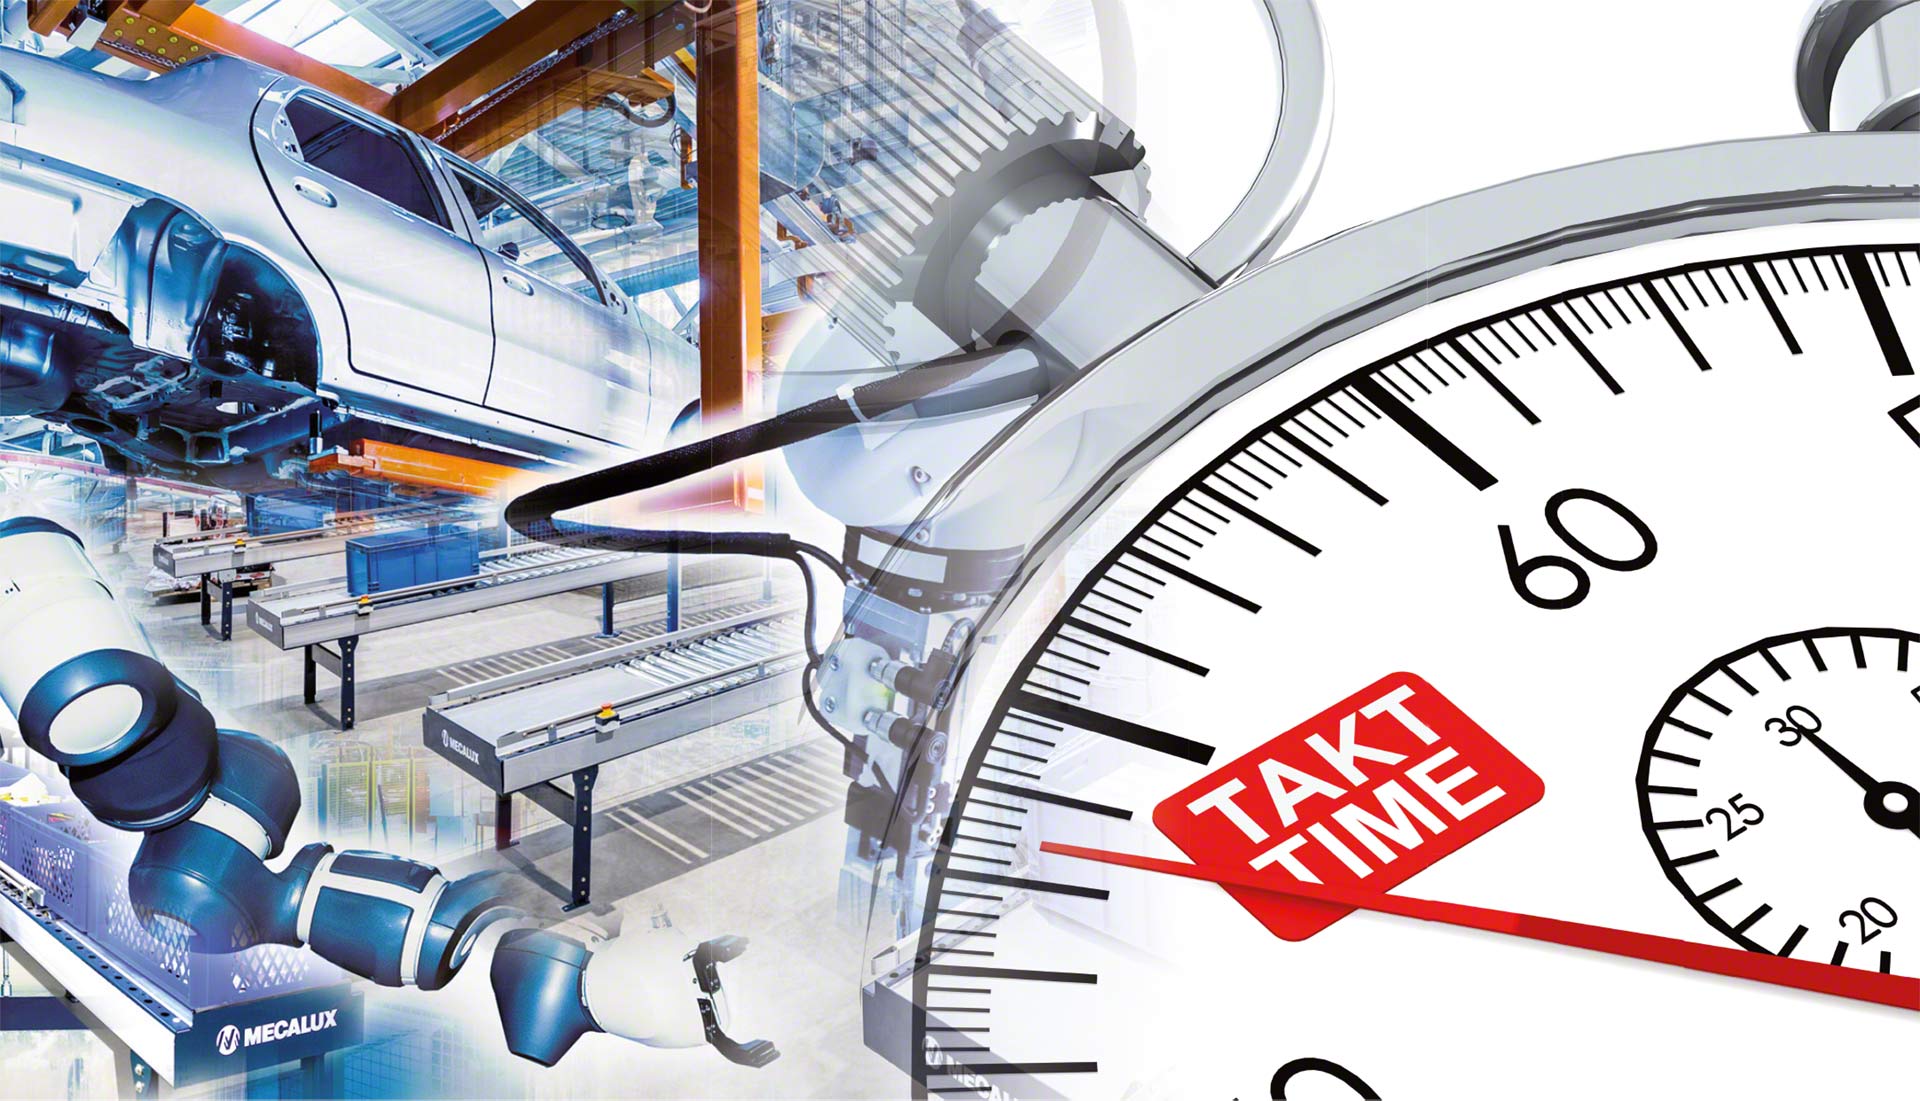 El Takt Time calcula el ritmo que debe mantener una cadena de producción para satisfacer la demanda